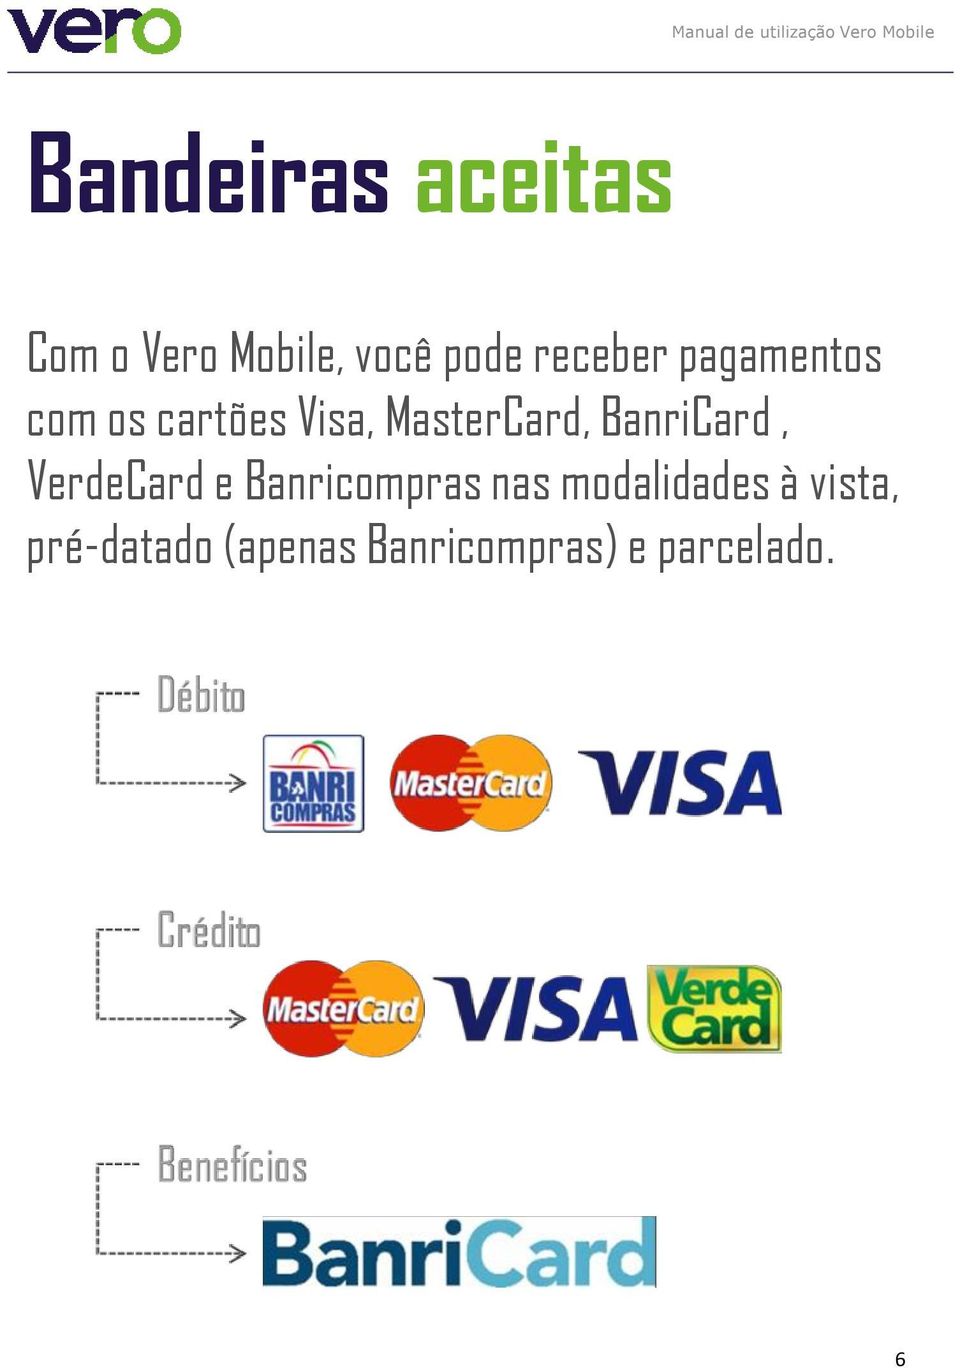 BanriCard, VerdeCard e Banricompras nas modalidades